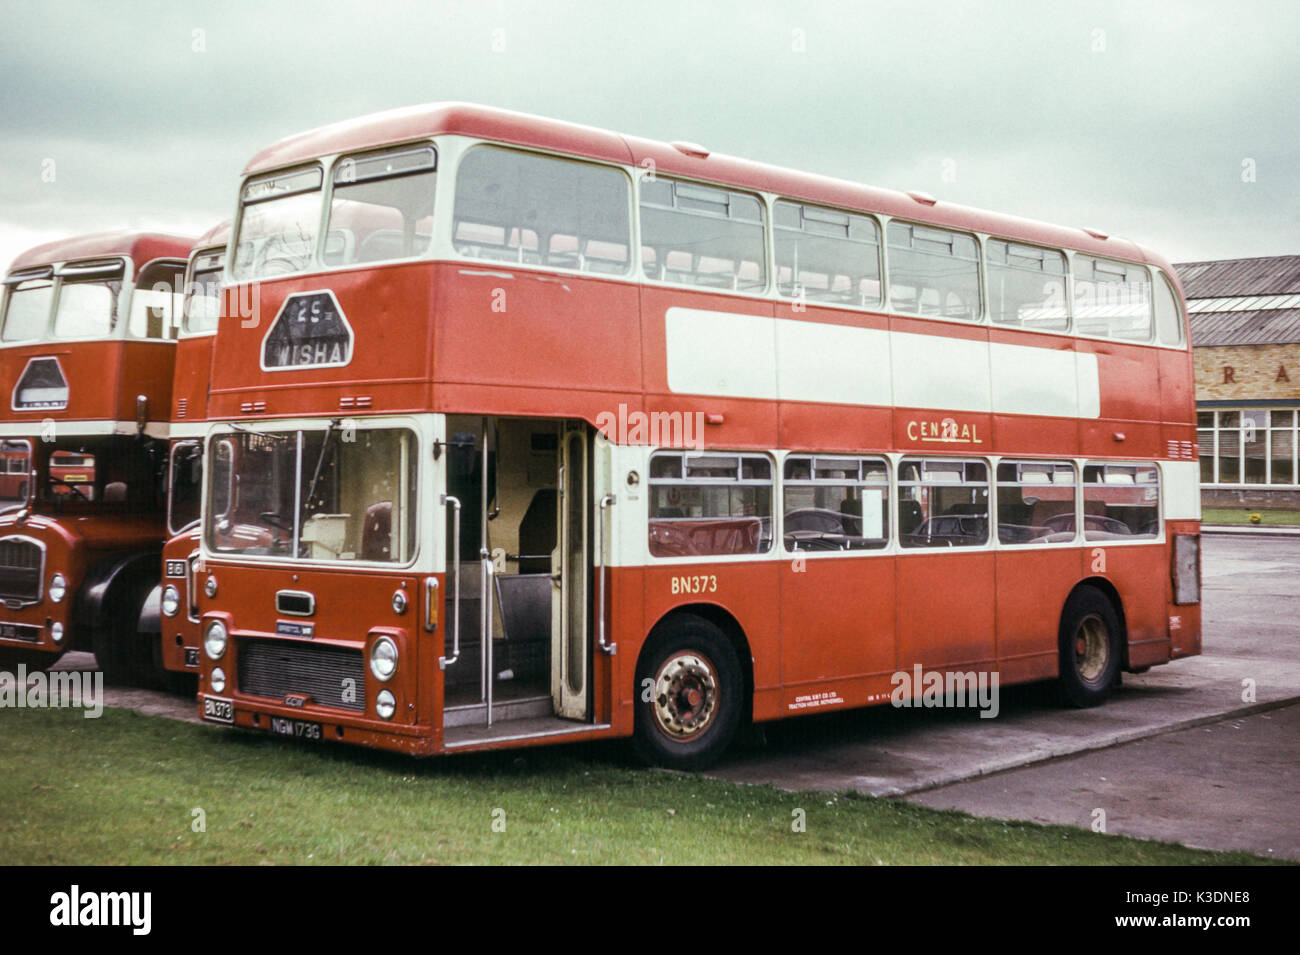 Scotland, UK - 1973: Vintage image of buses operating in 1973. Central SMT Bristol VRT SL6G/ECW Fleet No. BN373 (registration NGM 173G). Stock Photo